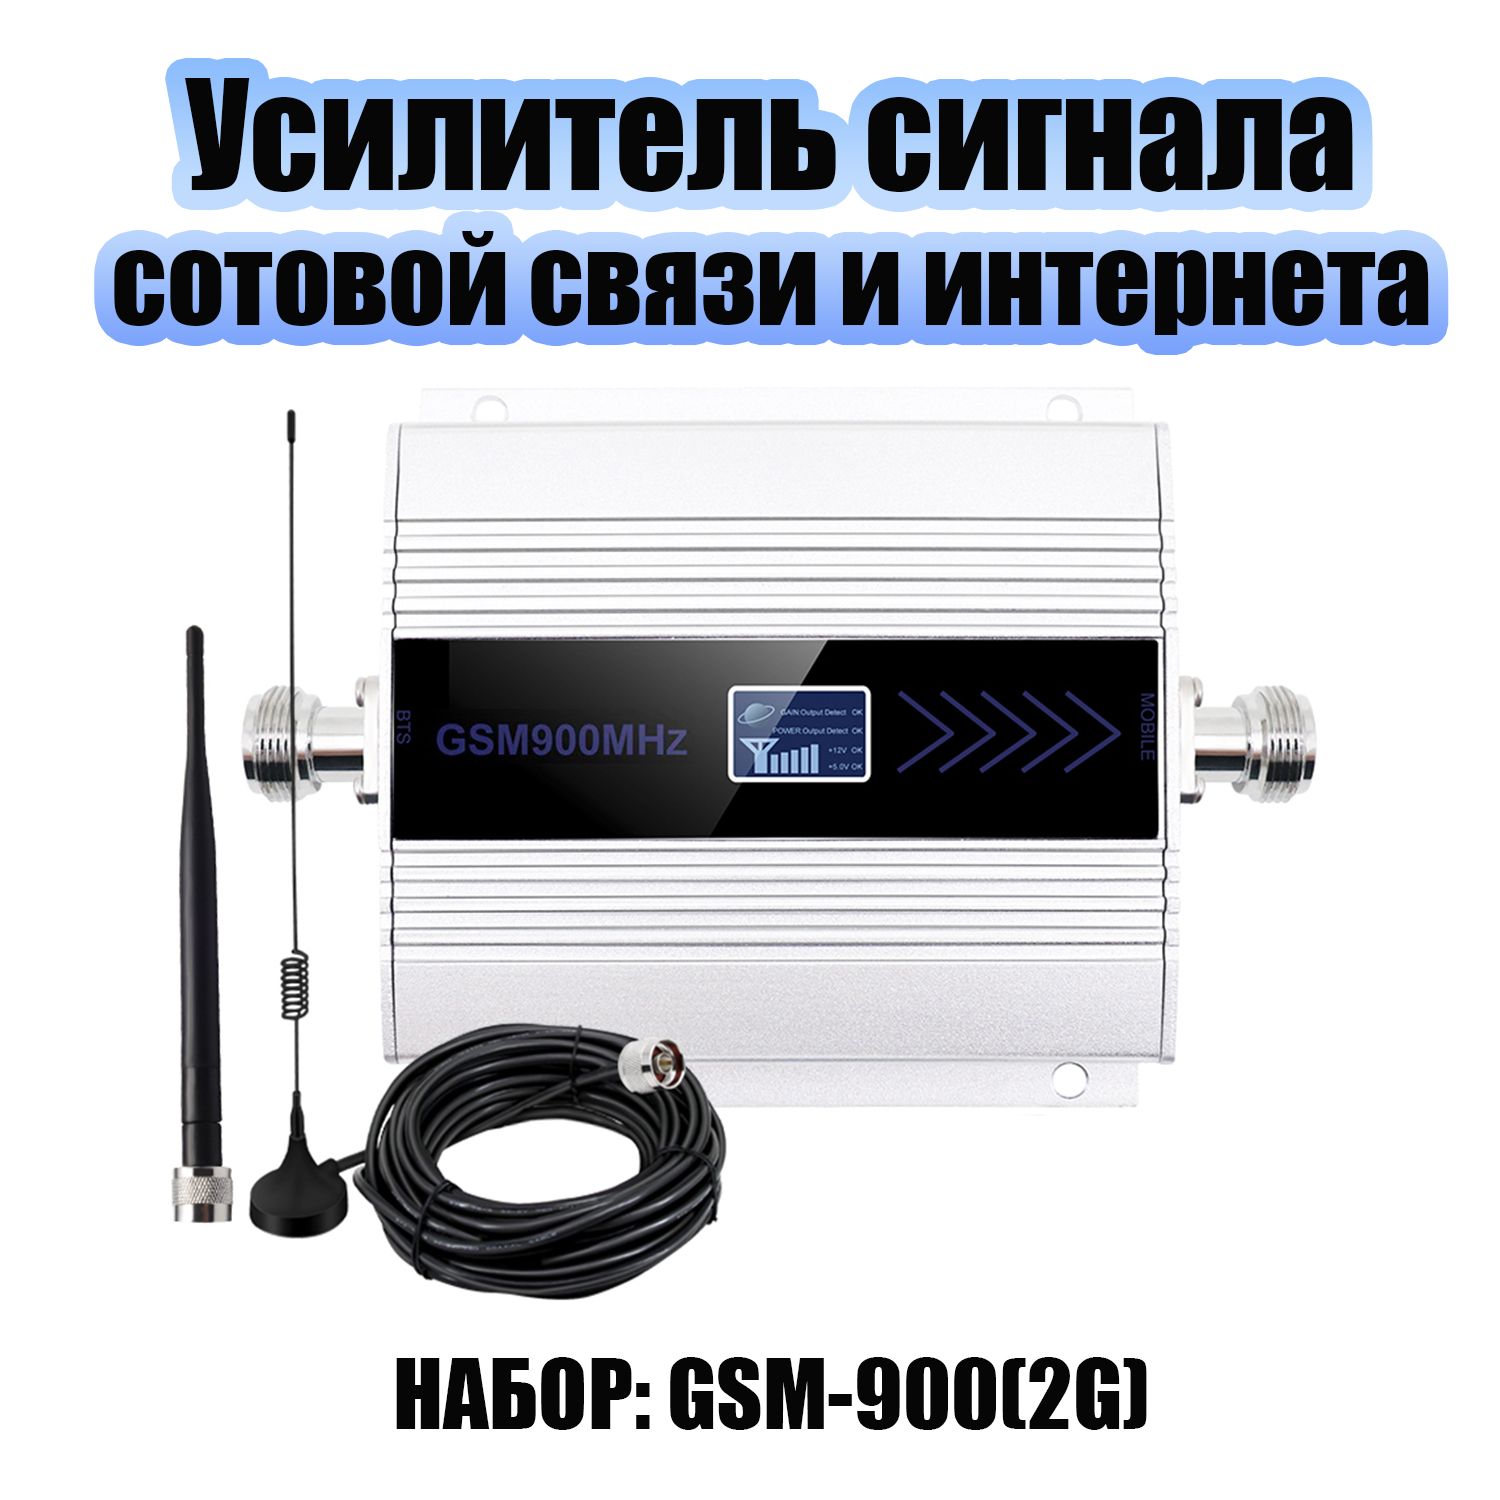 Комплектусилитель-репитерсигналасотовойсвязииинтернетасантеннамиОрбитаOT-GSM23